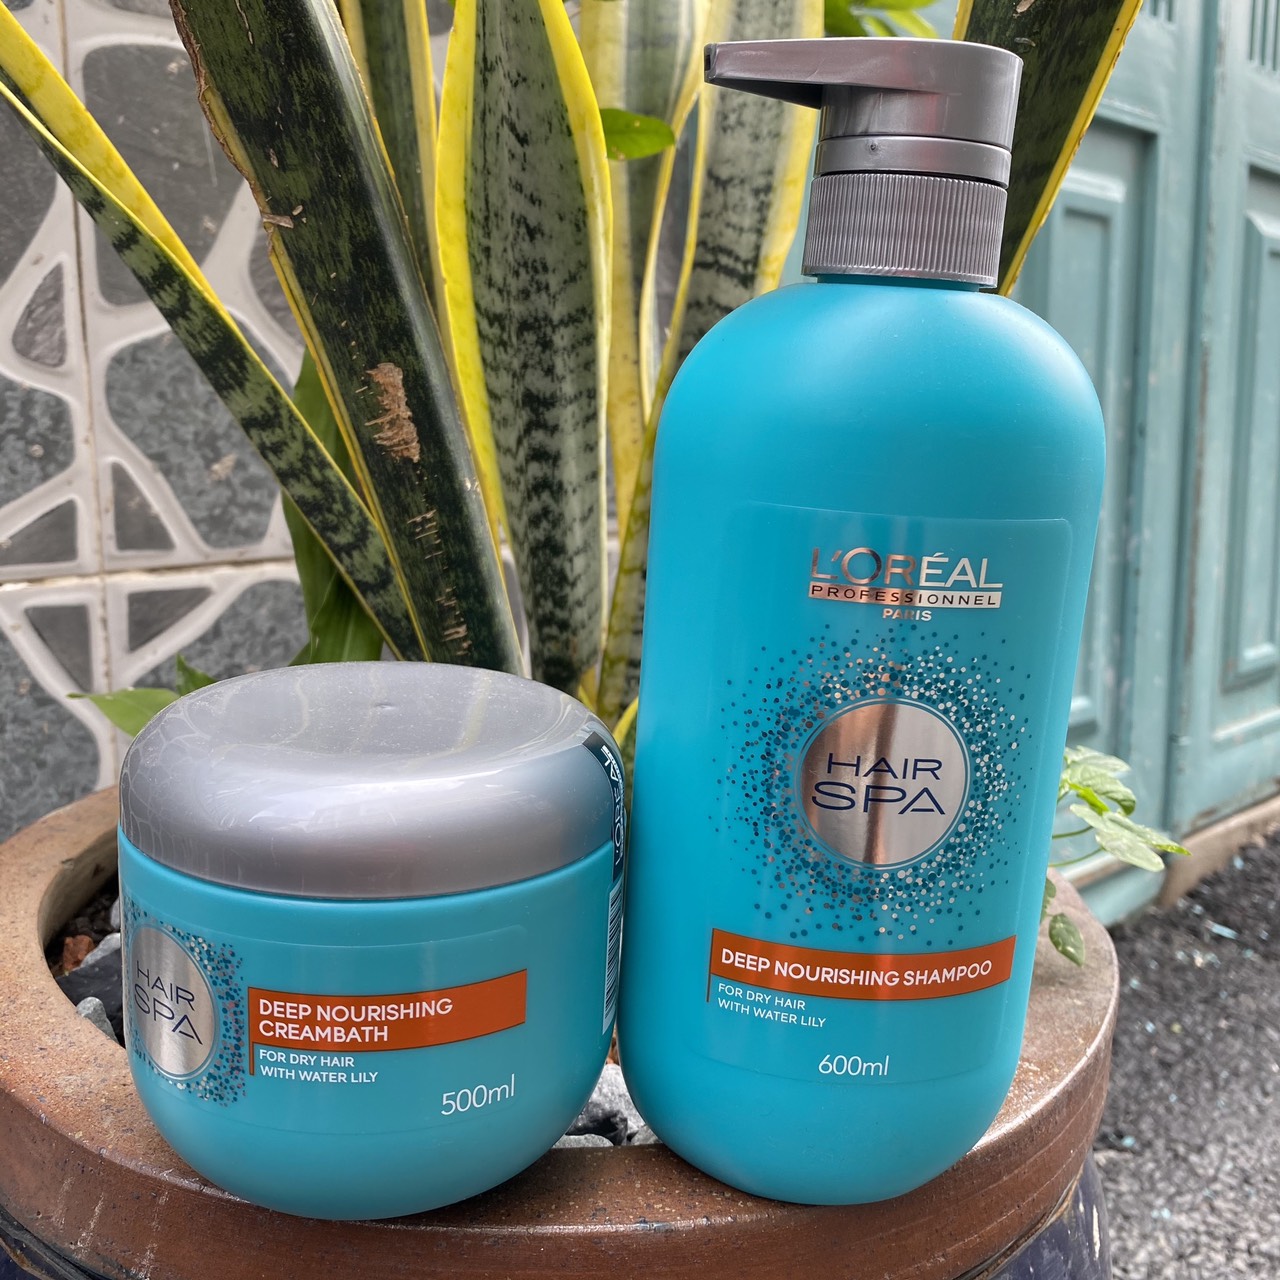 L'Oréal Hair Spa Deep Nourishing Shampoo 1500ml - HairMNL - HairMNL